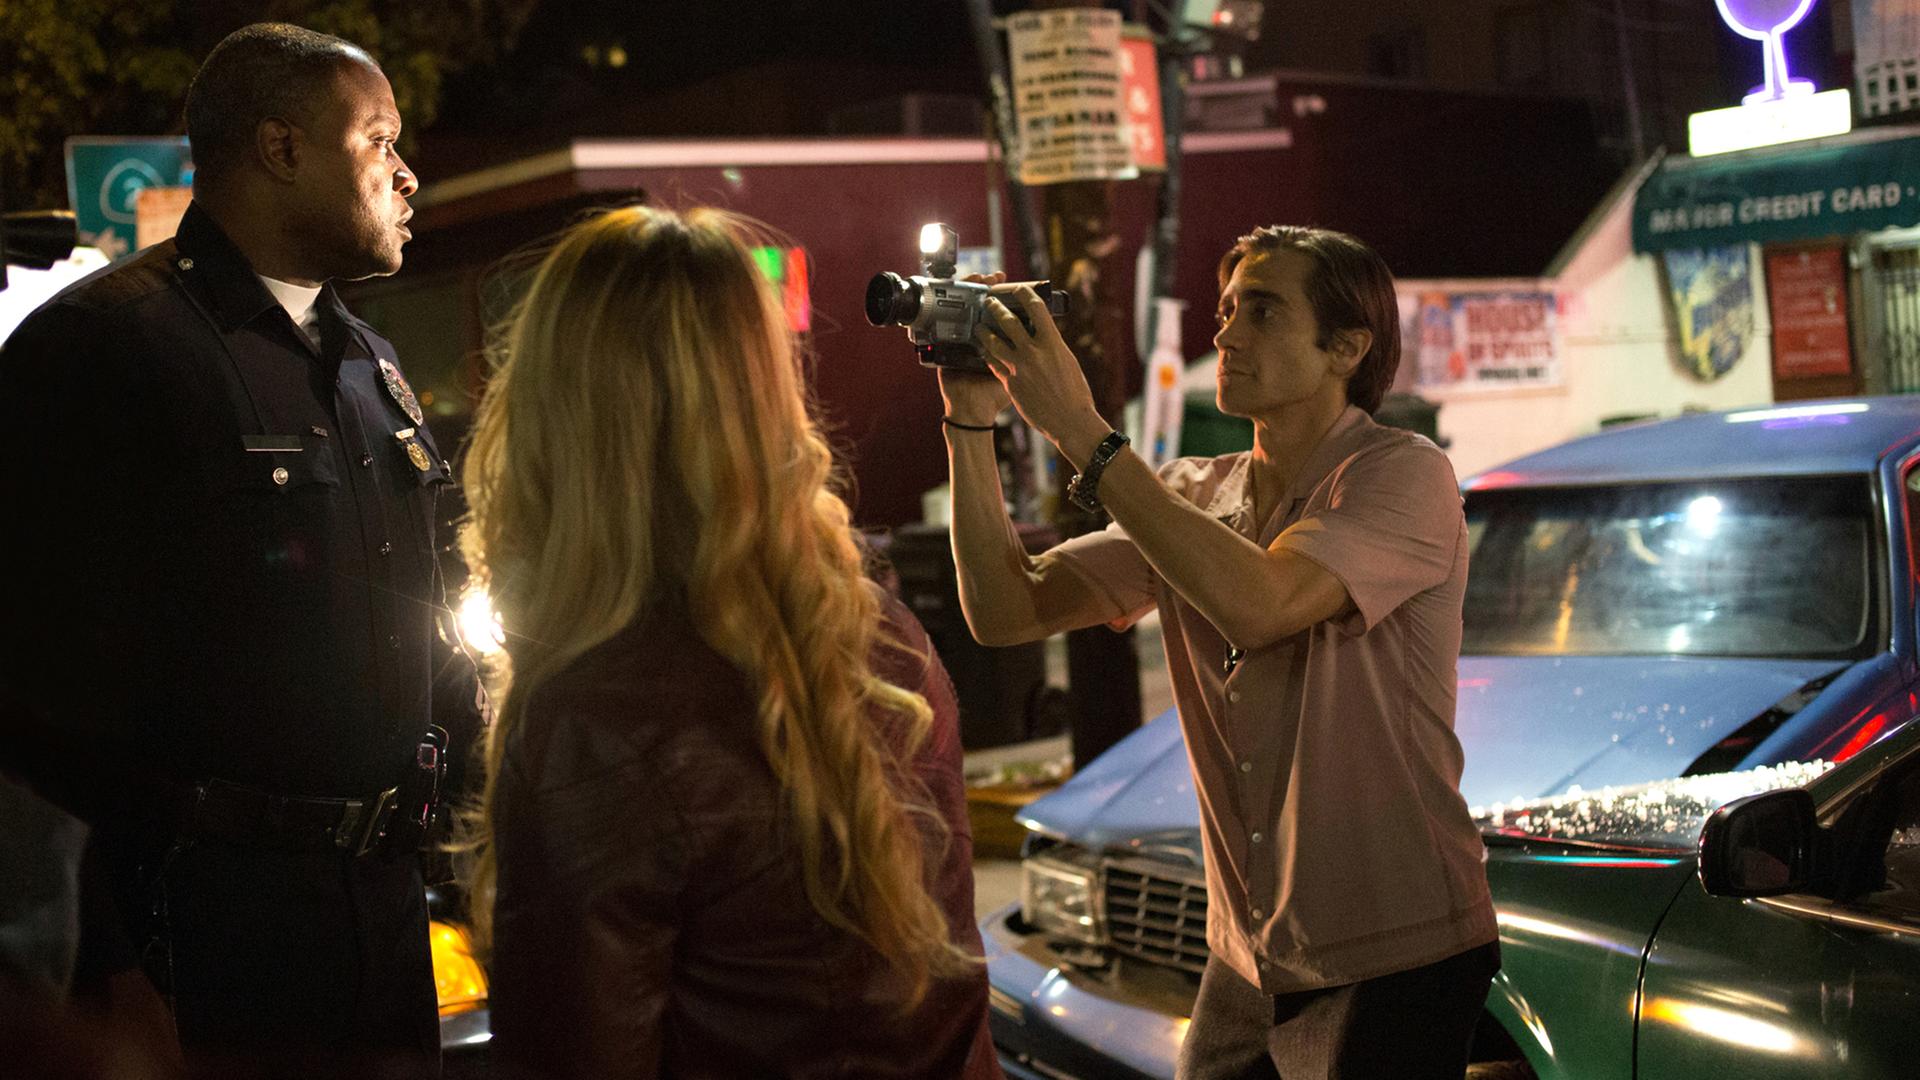 Die Szene des Films "Nightcrawler - Jede Nacht hat ihren Preis" zeigt den Kameramann Lou (Jake Gyllenhaal, r.) bei seiner rücksichtslosen Aufnahme eines Ereignisses auf der Straße.